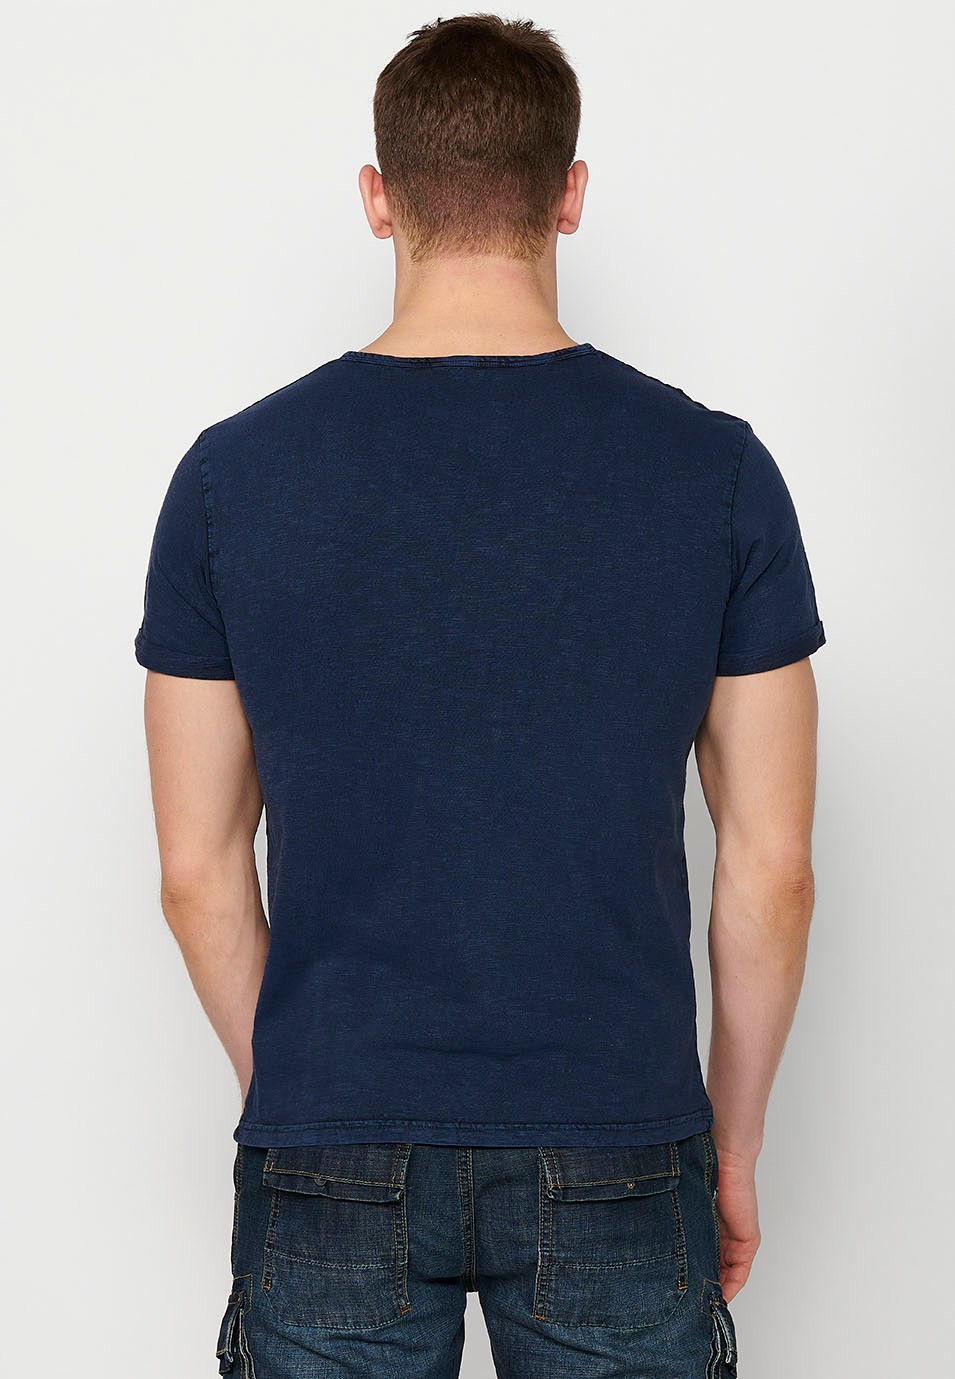 Camiseta de manga corta, cuello redondo con abertura, color azul para hombre